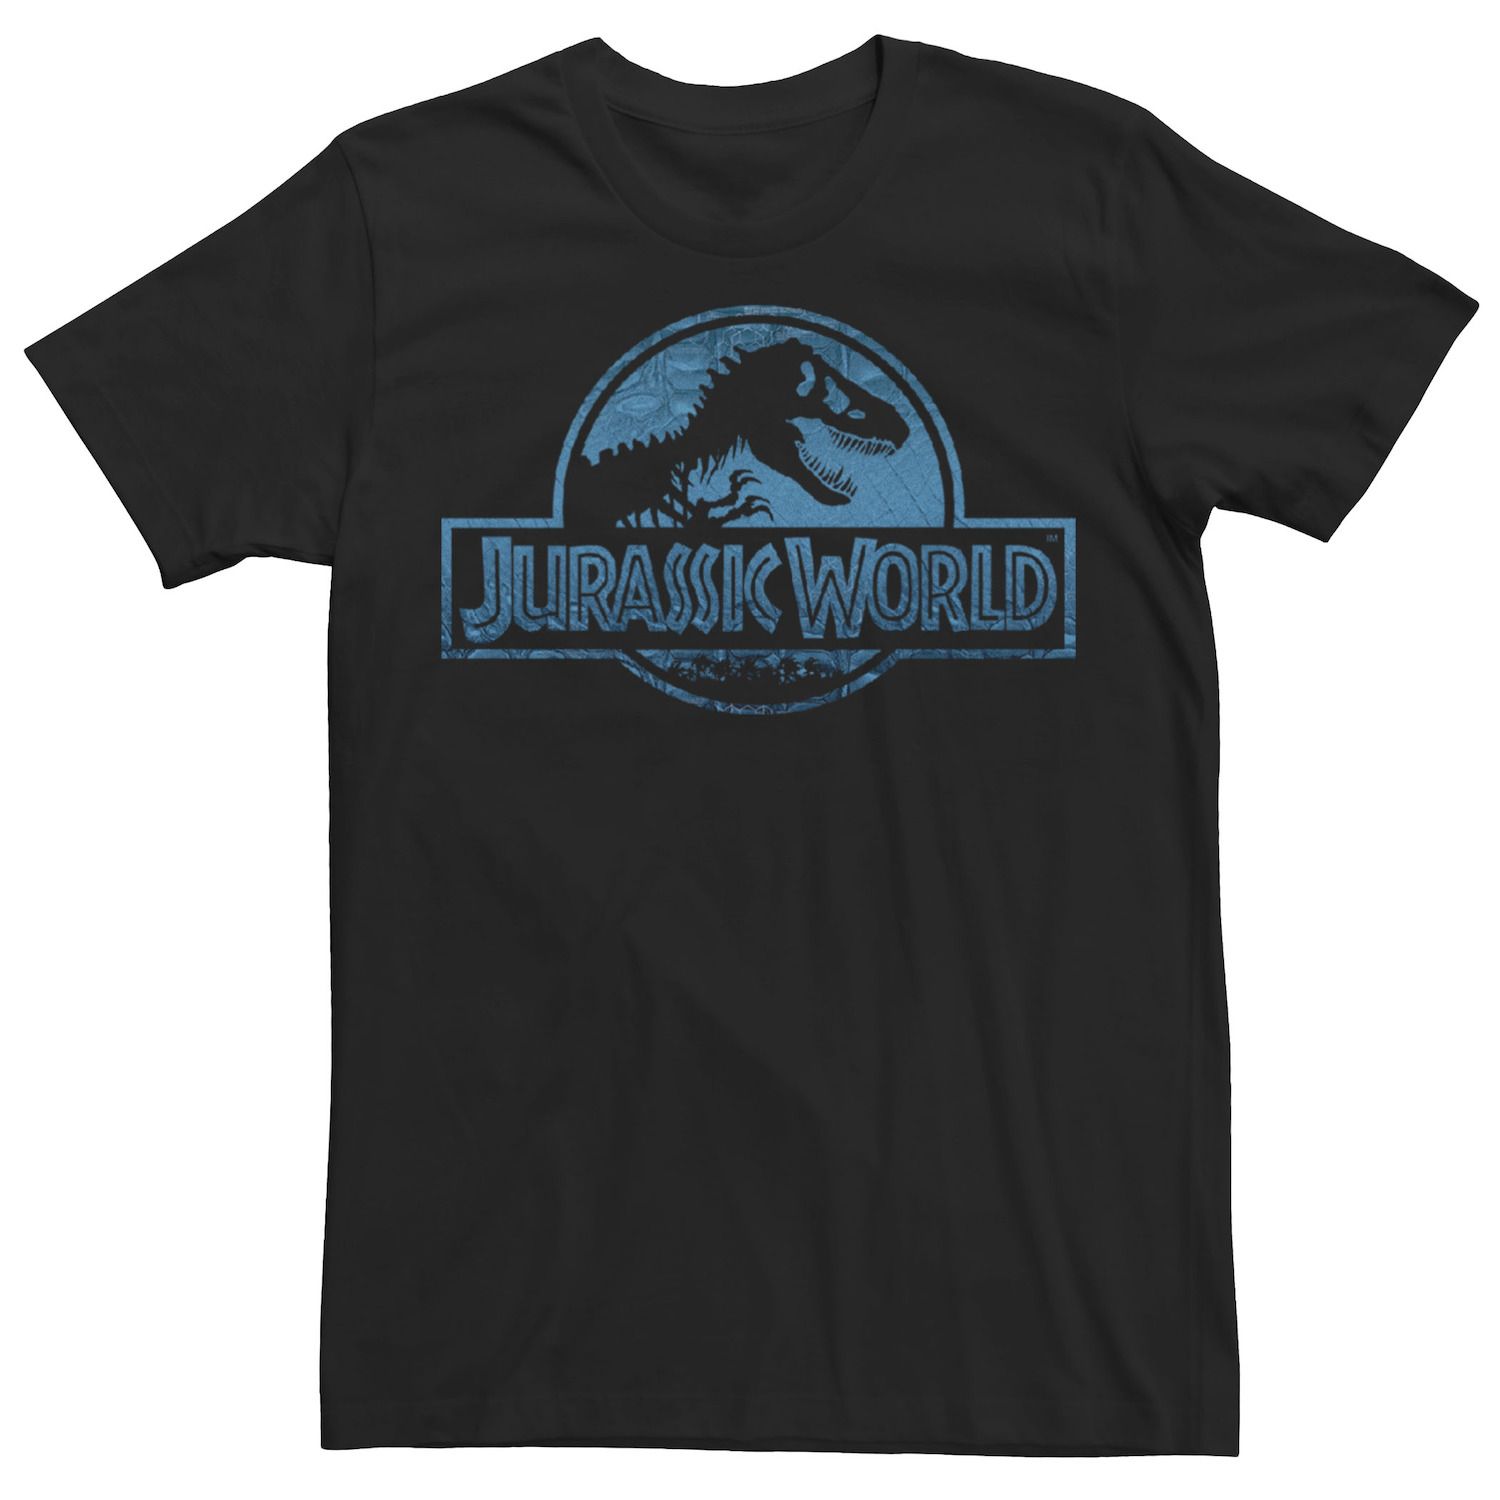 Мужская синяя футболка с логотипом динозавра Jurassic World цена и фото